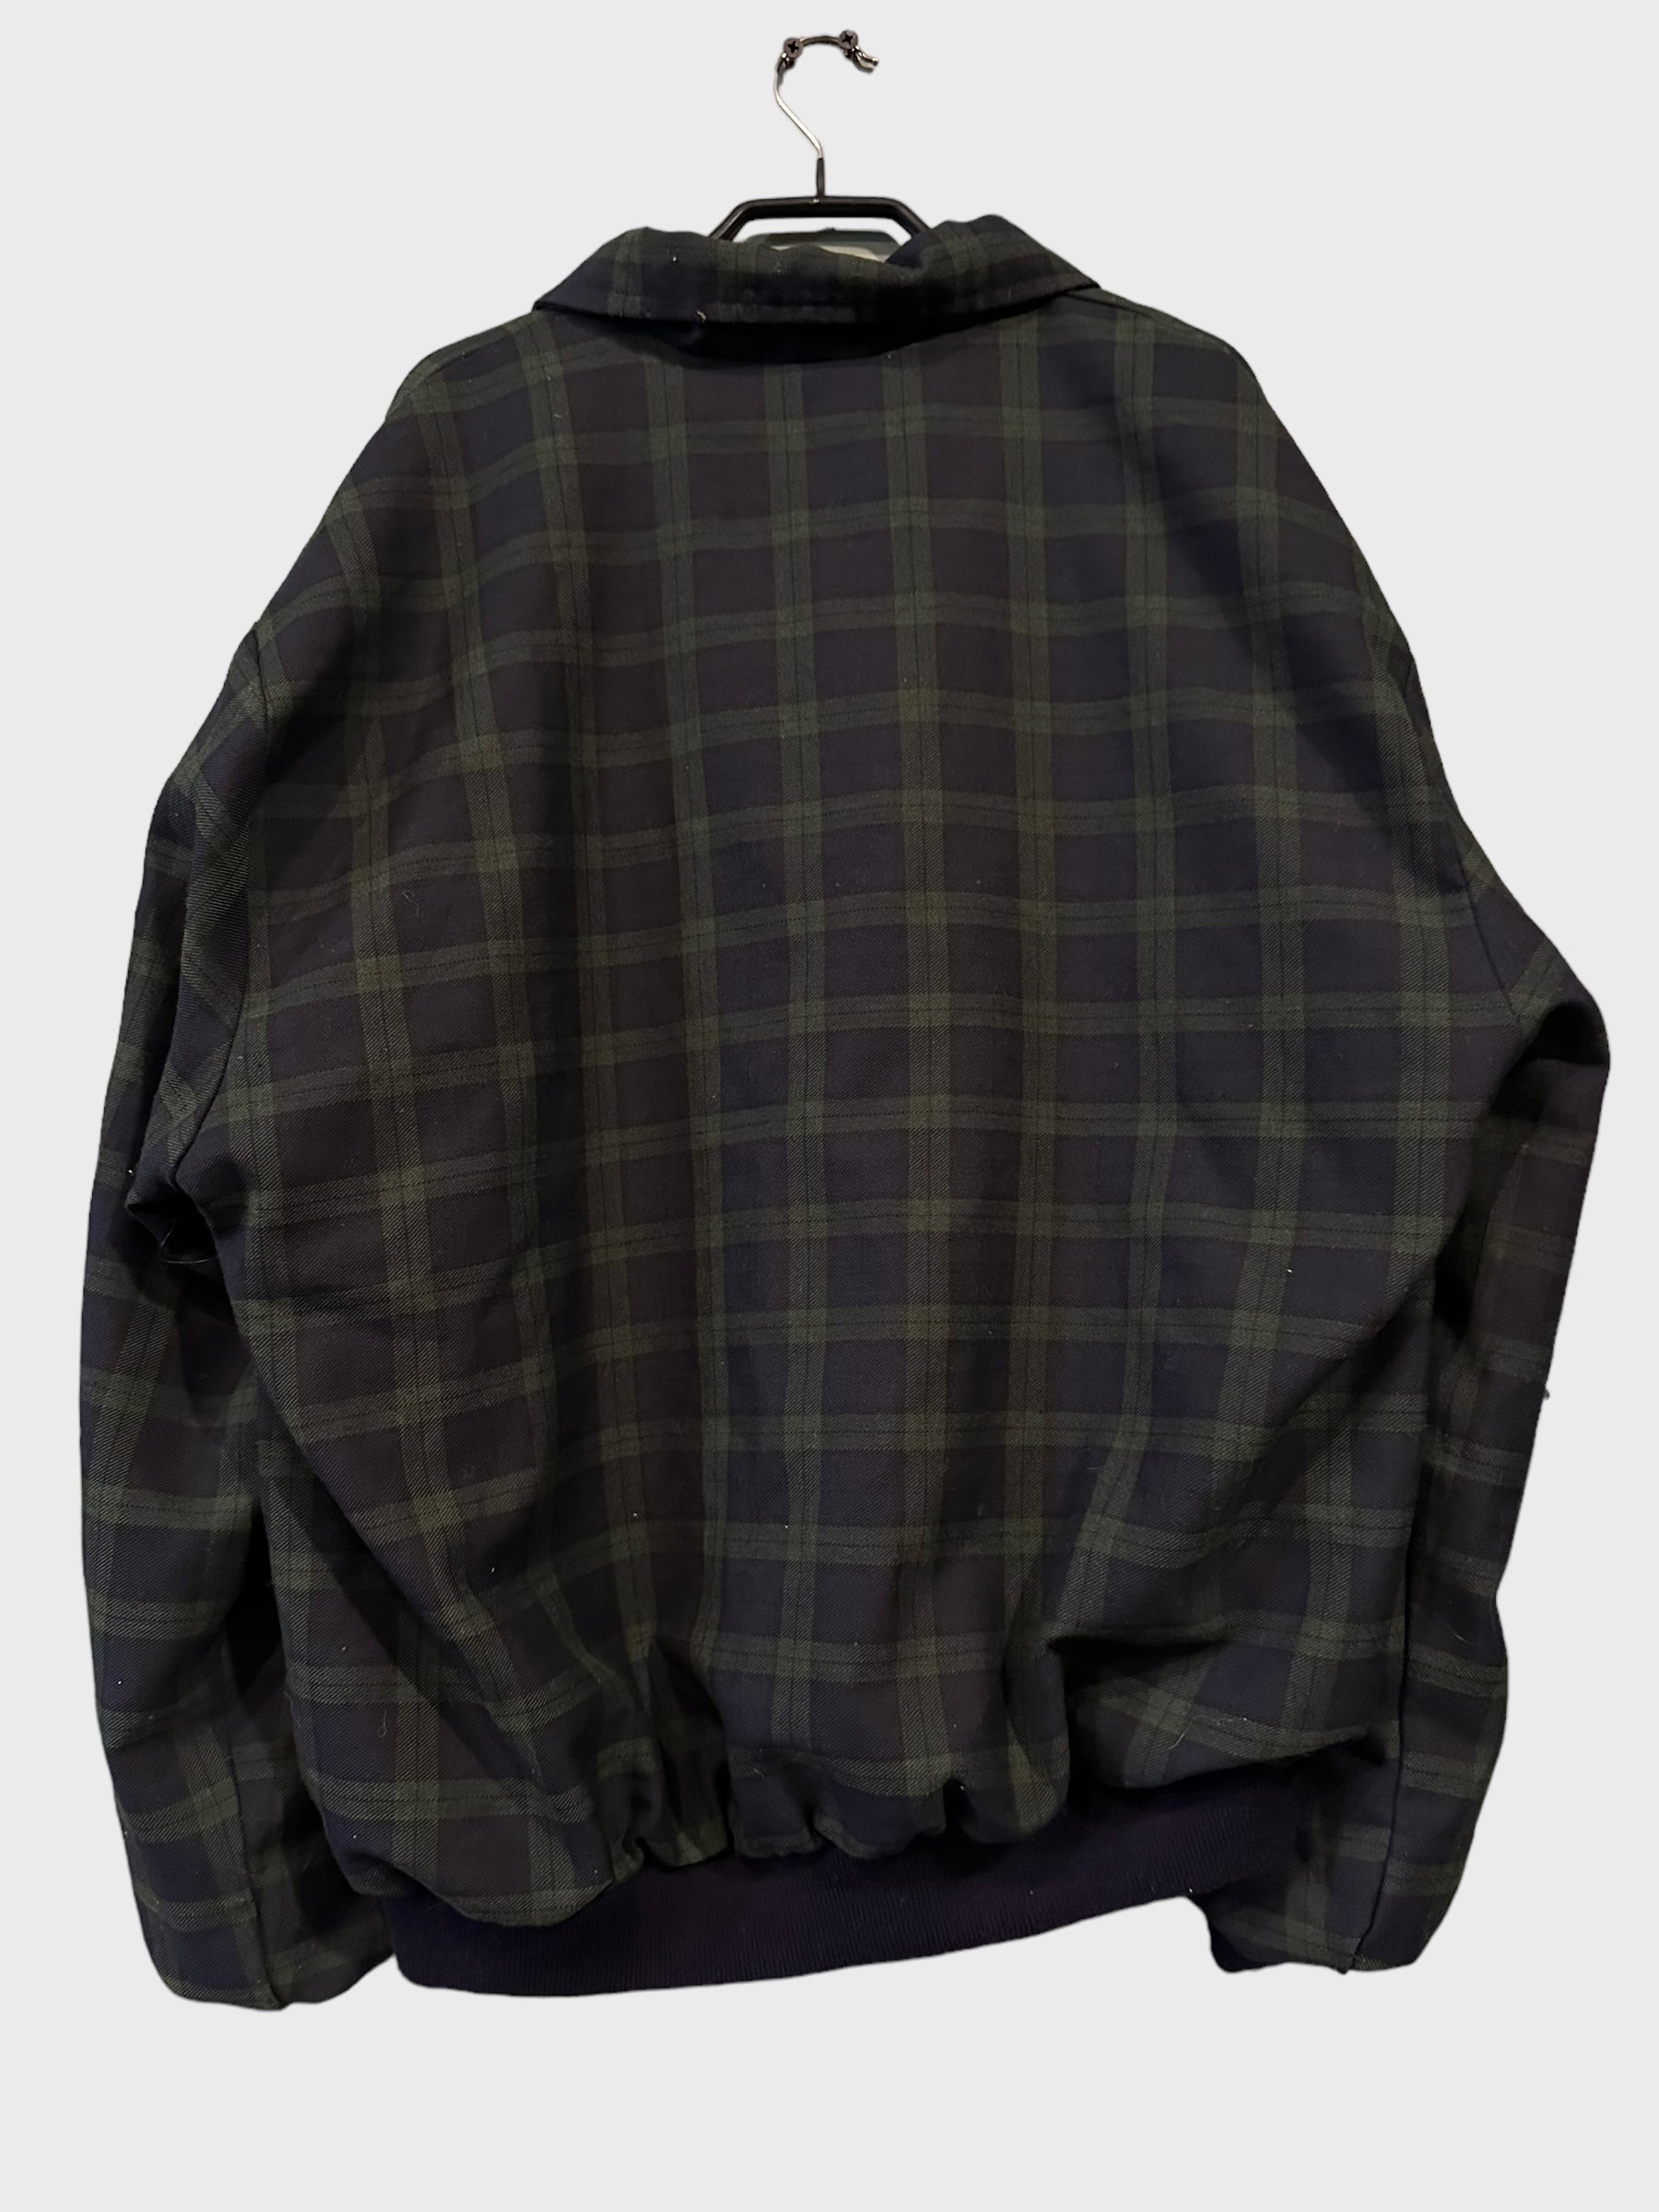 Lacoste Checkered Harrington Jacket